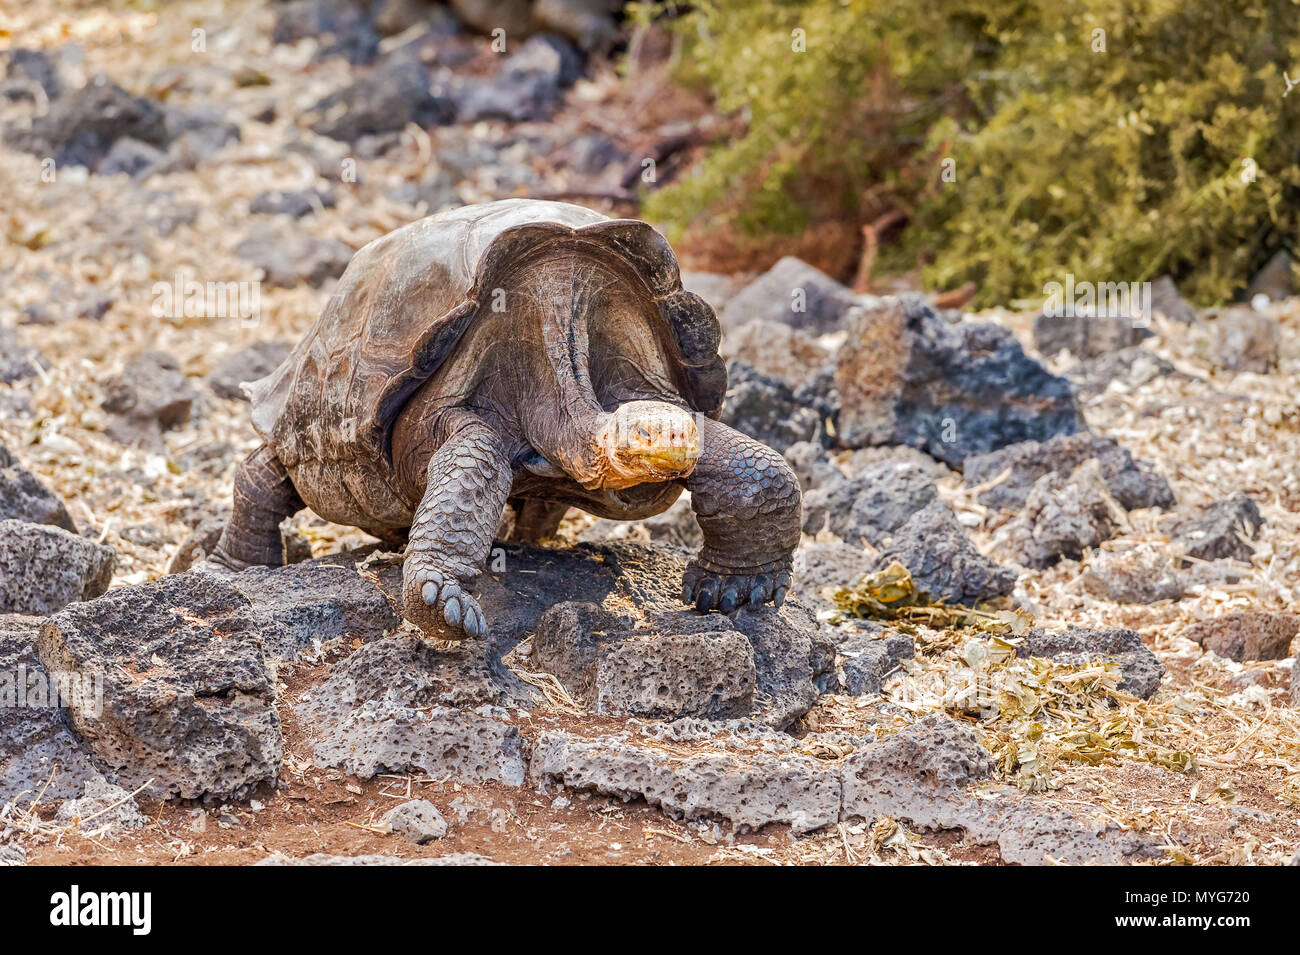 Riesige Schildkröte von Santa Cruz Insel der Galapagos-Inseln. Galapagos Schildkröte ist das größte lebende Arten der Schildkröte, erreichen ein Gewicht von über 400 Kilogramm, Stockfoto